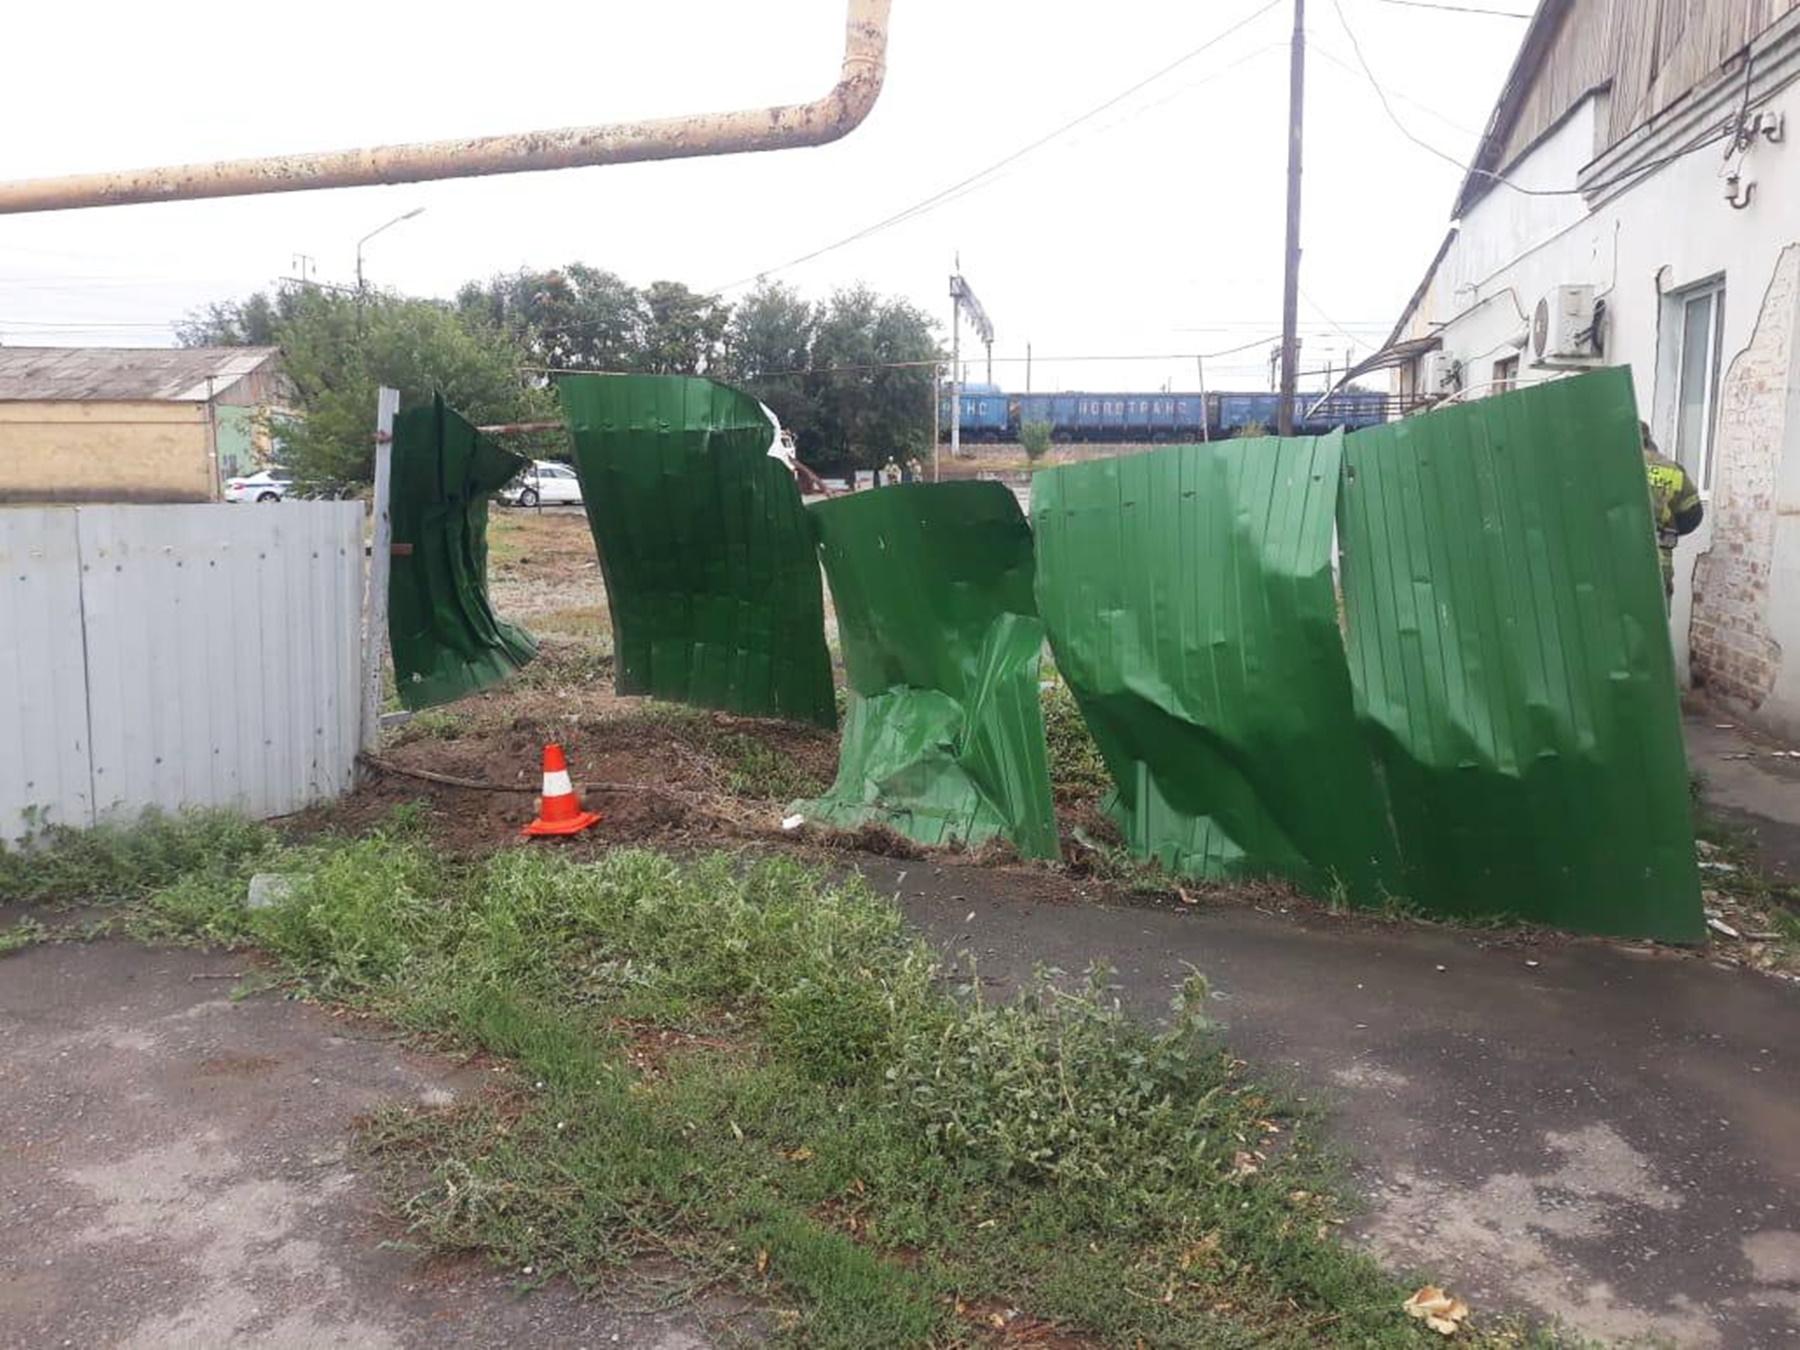 В Сальске 35-летний водитель погиб, протаранив на «Ладе» забор и бетонные трубы